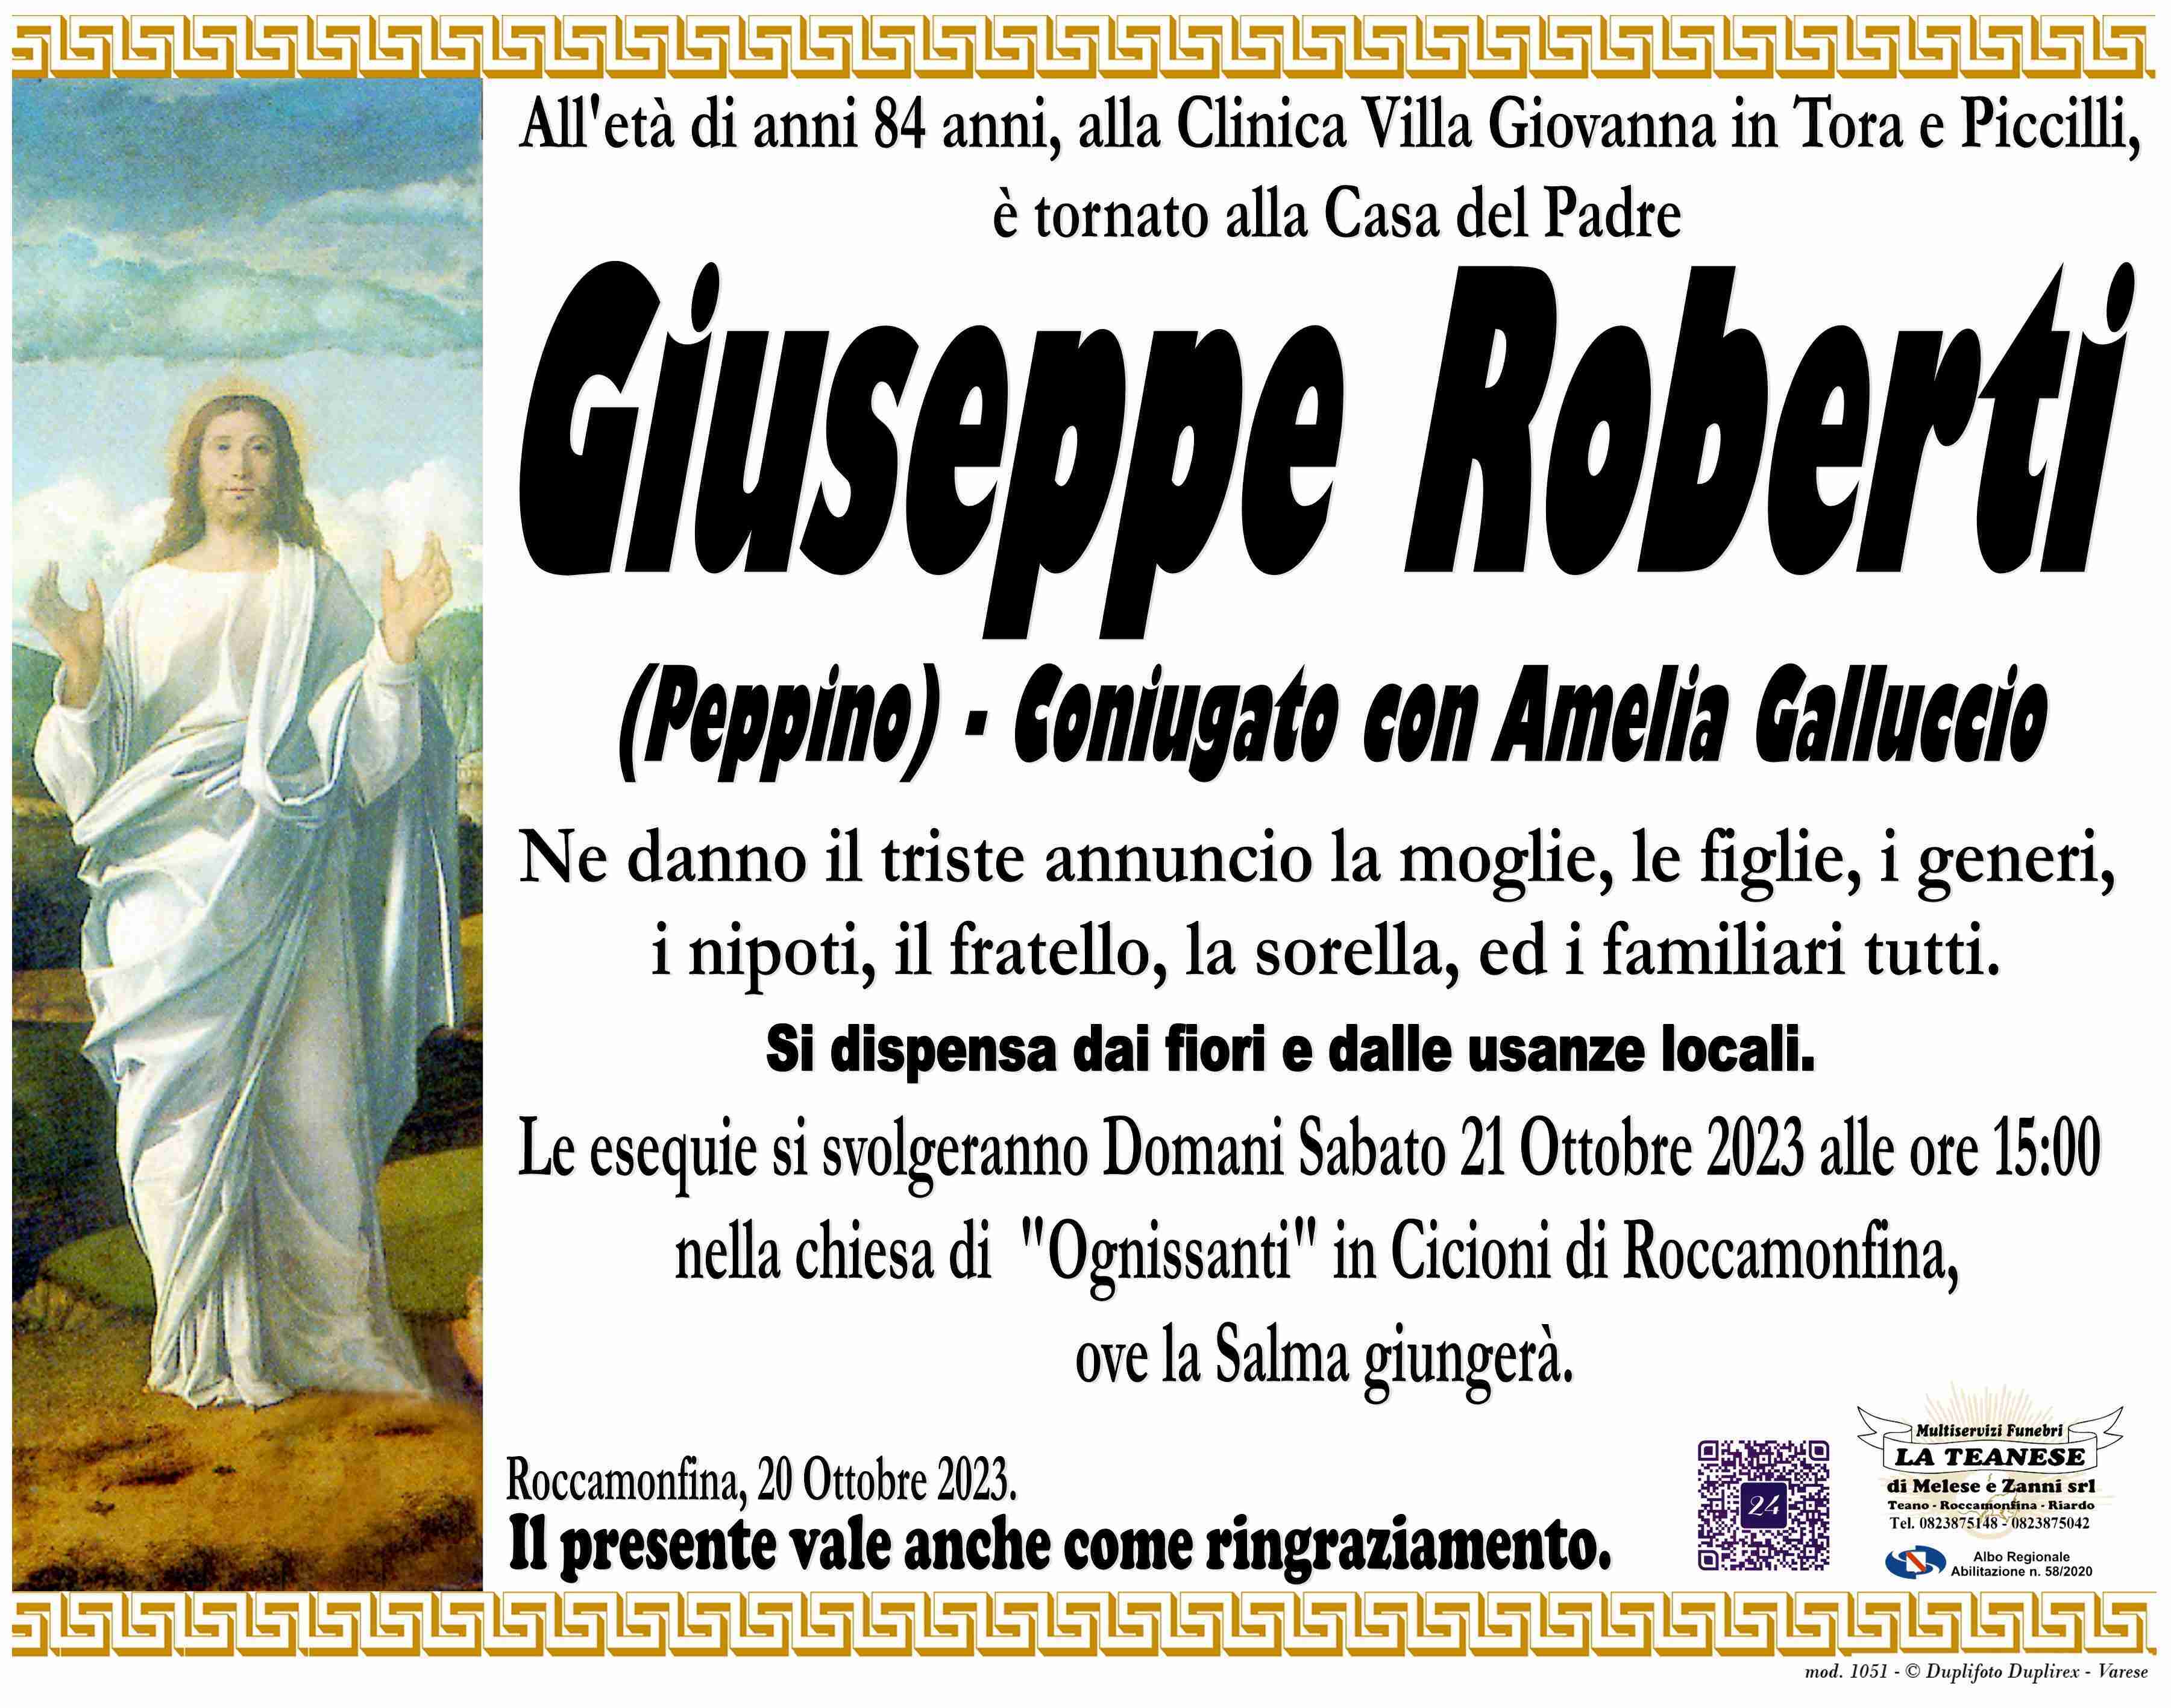 Giuseppe Roberti